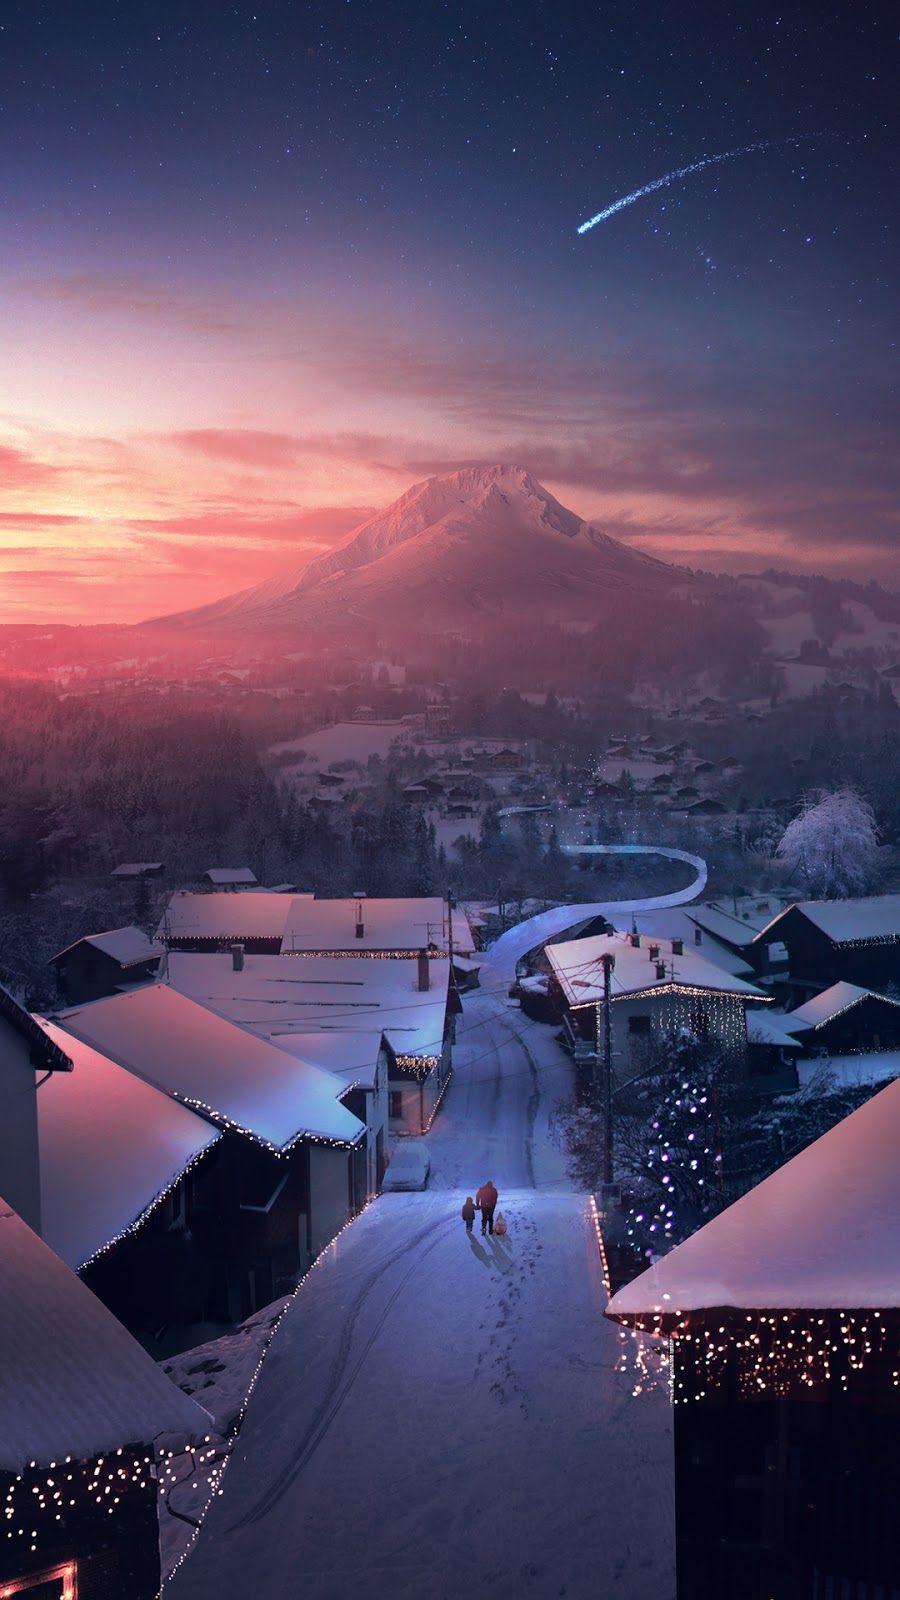 Những hình nền Anime Winter cho iPhone sẽ mang đến cho bạn cảm giác ấm áp trong tiết trời lạnh giá. Với cảnh quan phong phú và nghệ thuật tuyệt đẹp, hình ảnh này sẽ giúp bạn tìm lại được bình yên trong cuộc sống hiện tại.